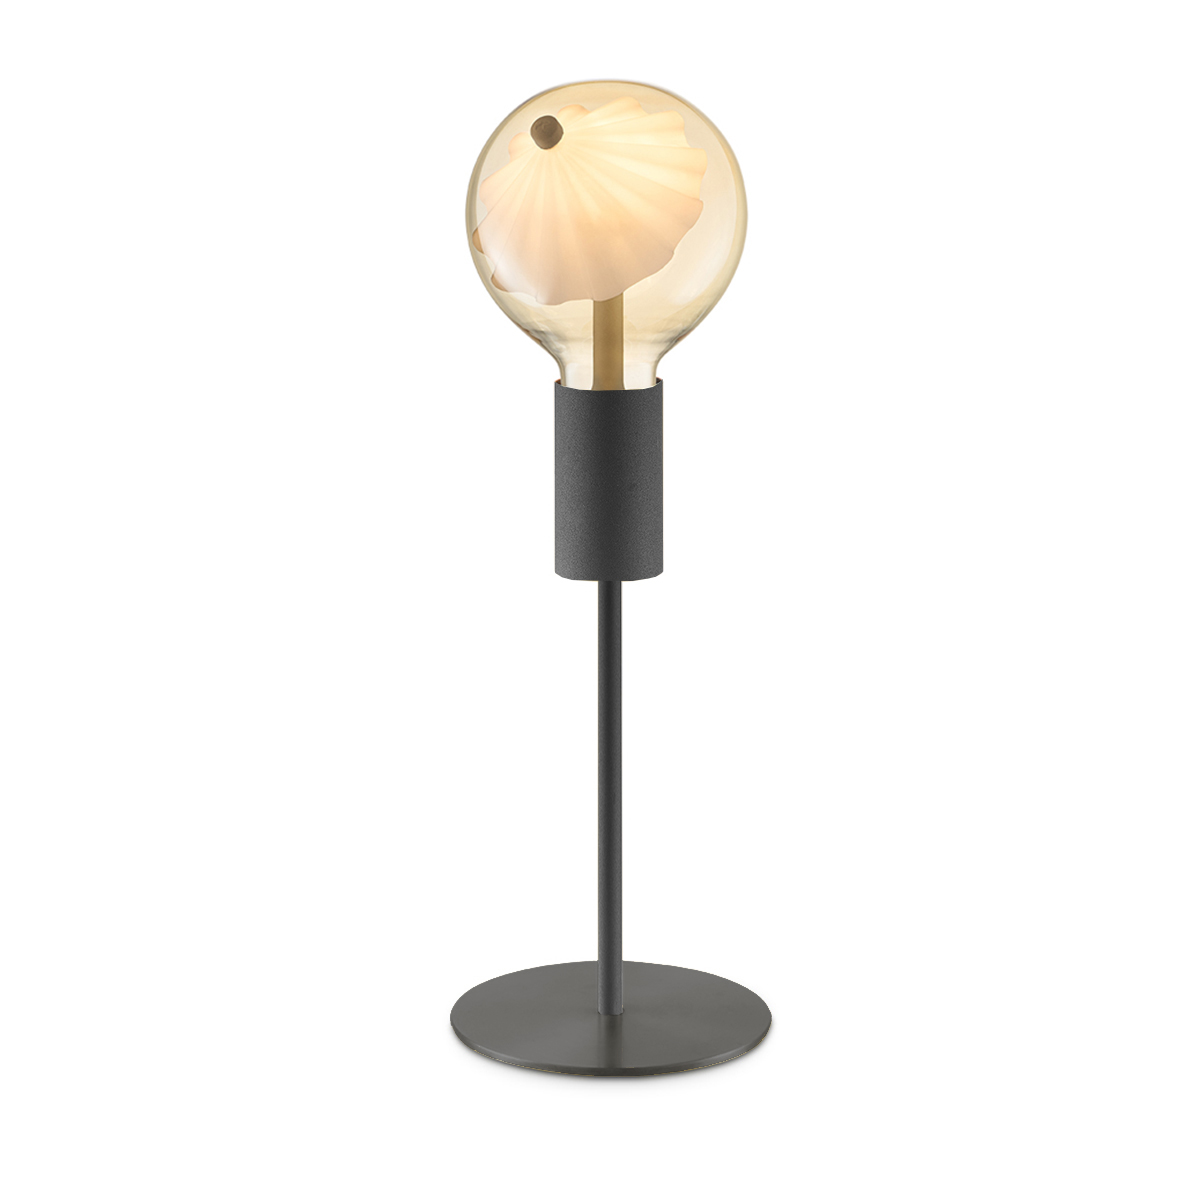 Tangla lighting - TLT7045-01SB - Table lamp 1 Light - metal - move me globus - black - medium - E27